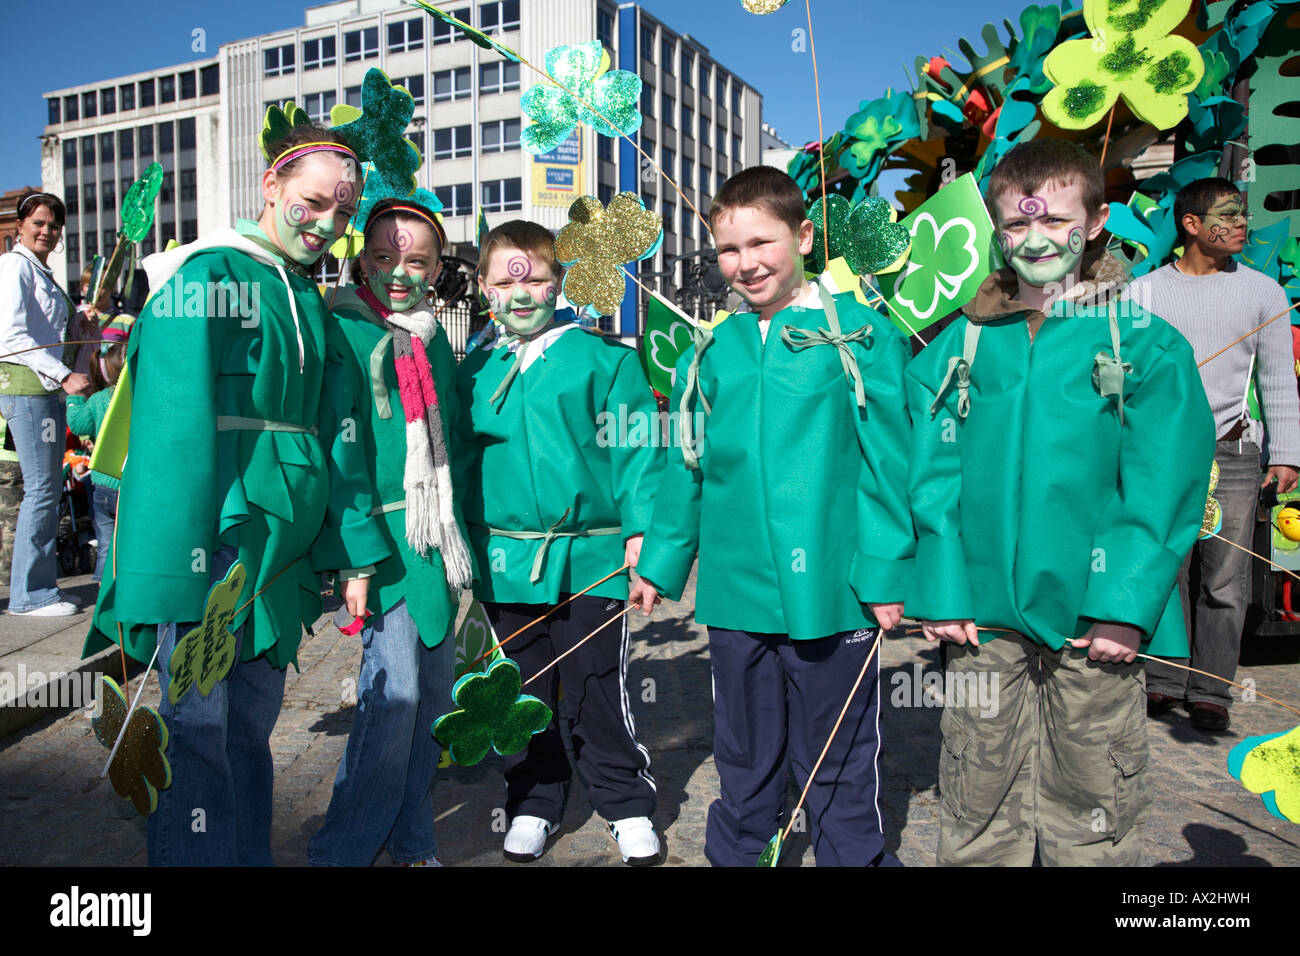 Groupe de jeunes filles et jeunes garçons jusqu'à prendre part au défilé et carnaval sur St Patricks day belfast Irlande du Nord Banque D'Images